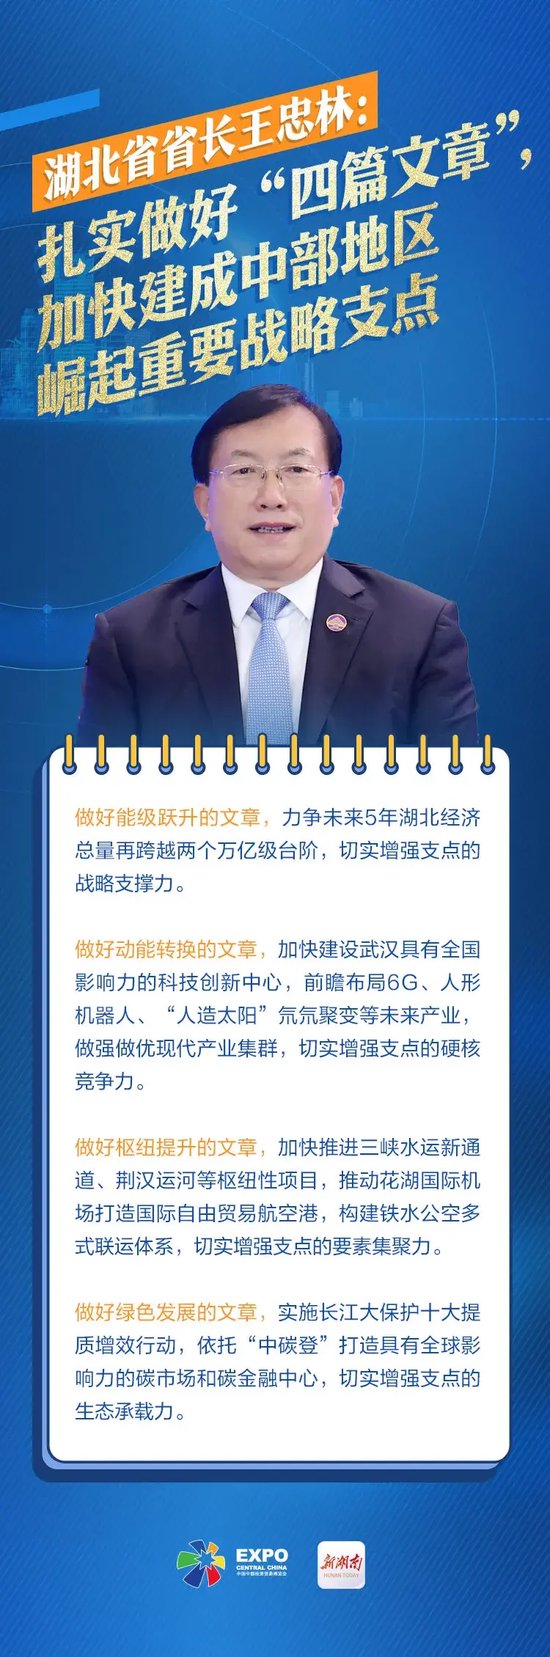 湖北省省长王忠林:扎实做好四篇文章,加快建成中部地区崛起重要战略